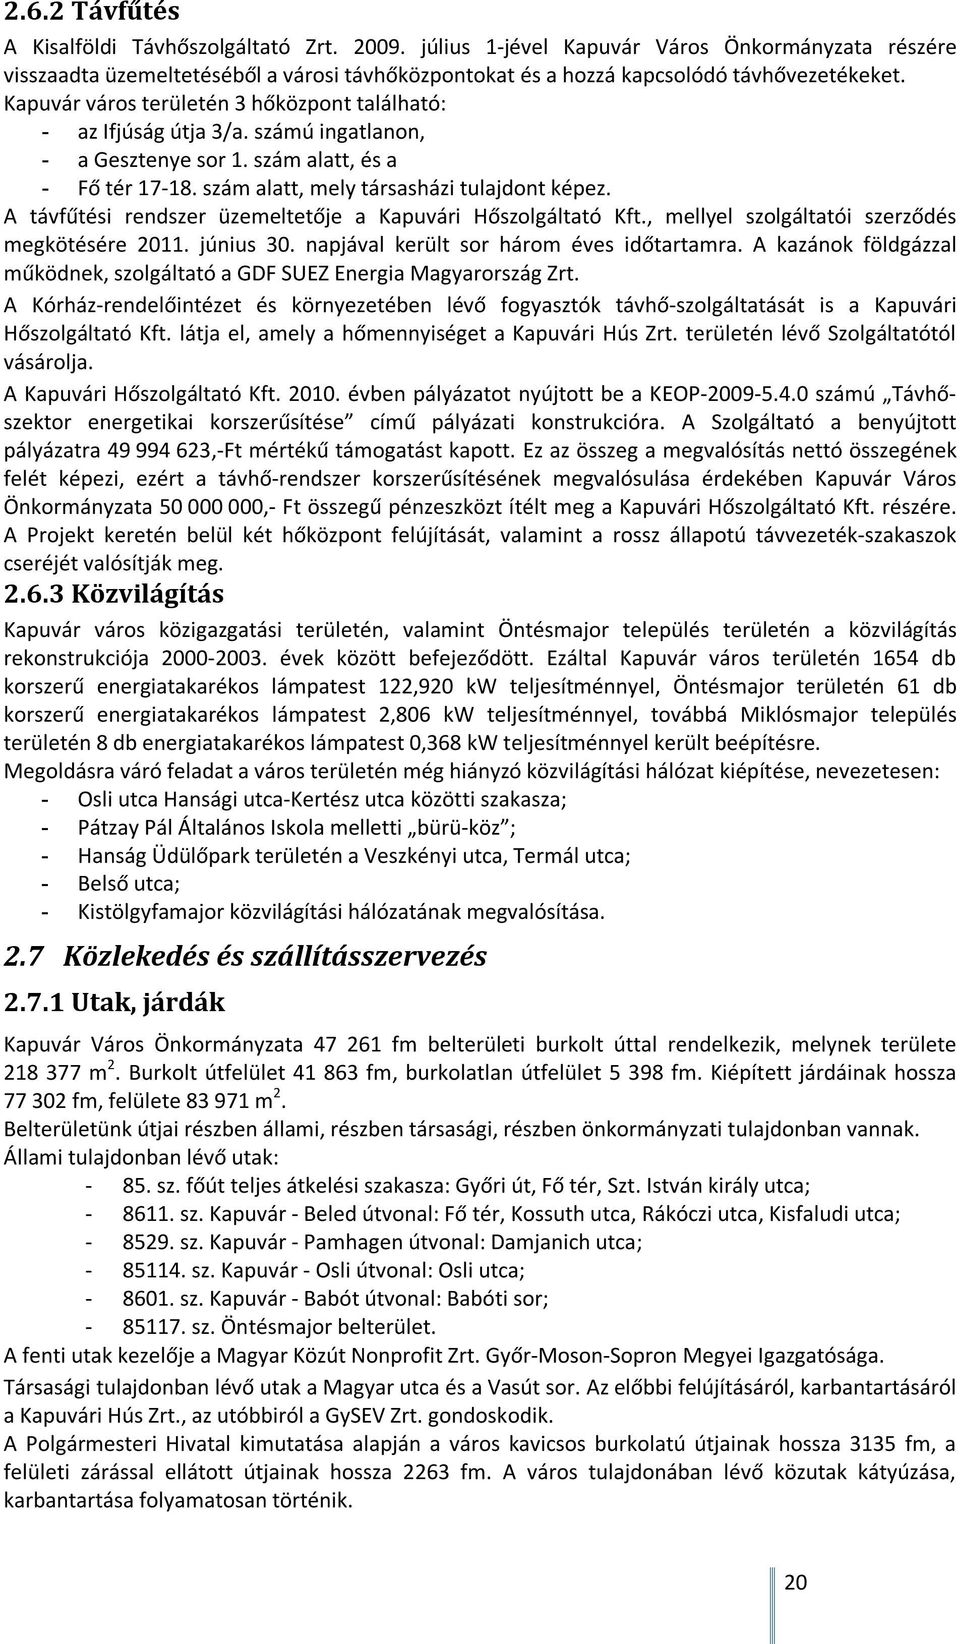 A távfűtési rendszer üzemeltetője a Kapuvári Hőszolgáltató Kft., mellyel szolgáltatói szerződés megkötésére 2011. június 30. napjával került sor három éves időtartamra.